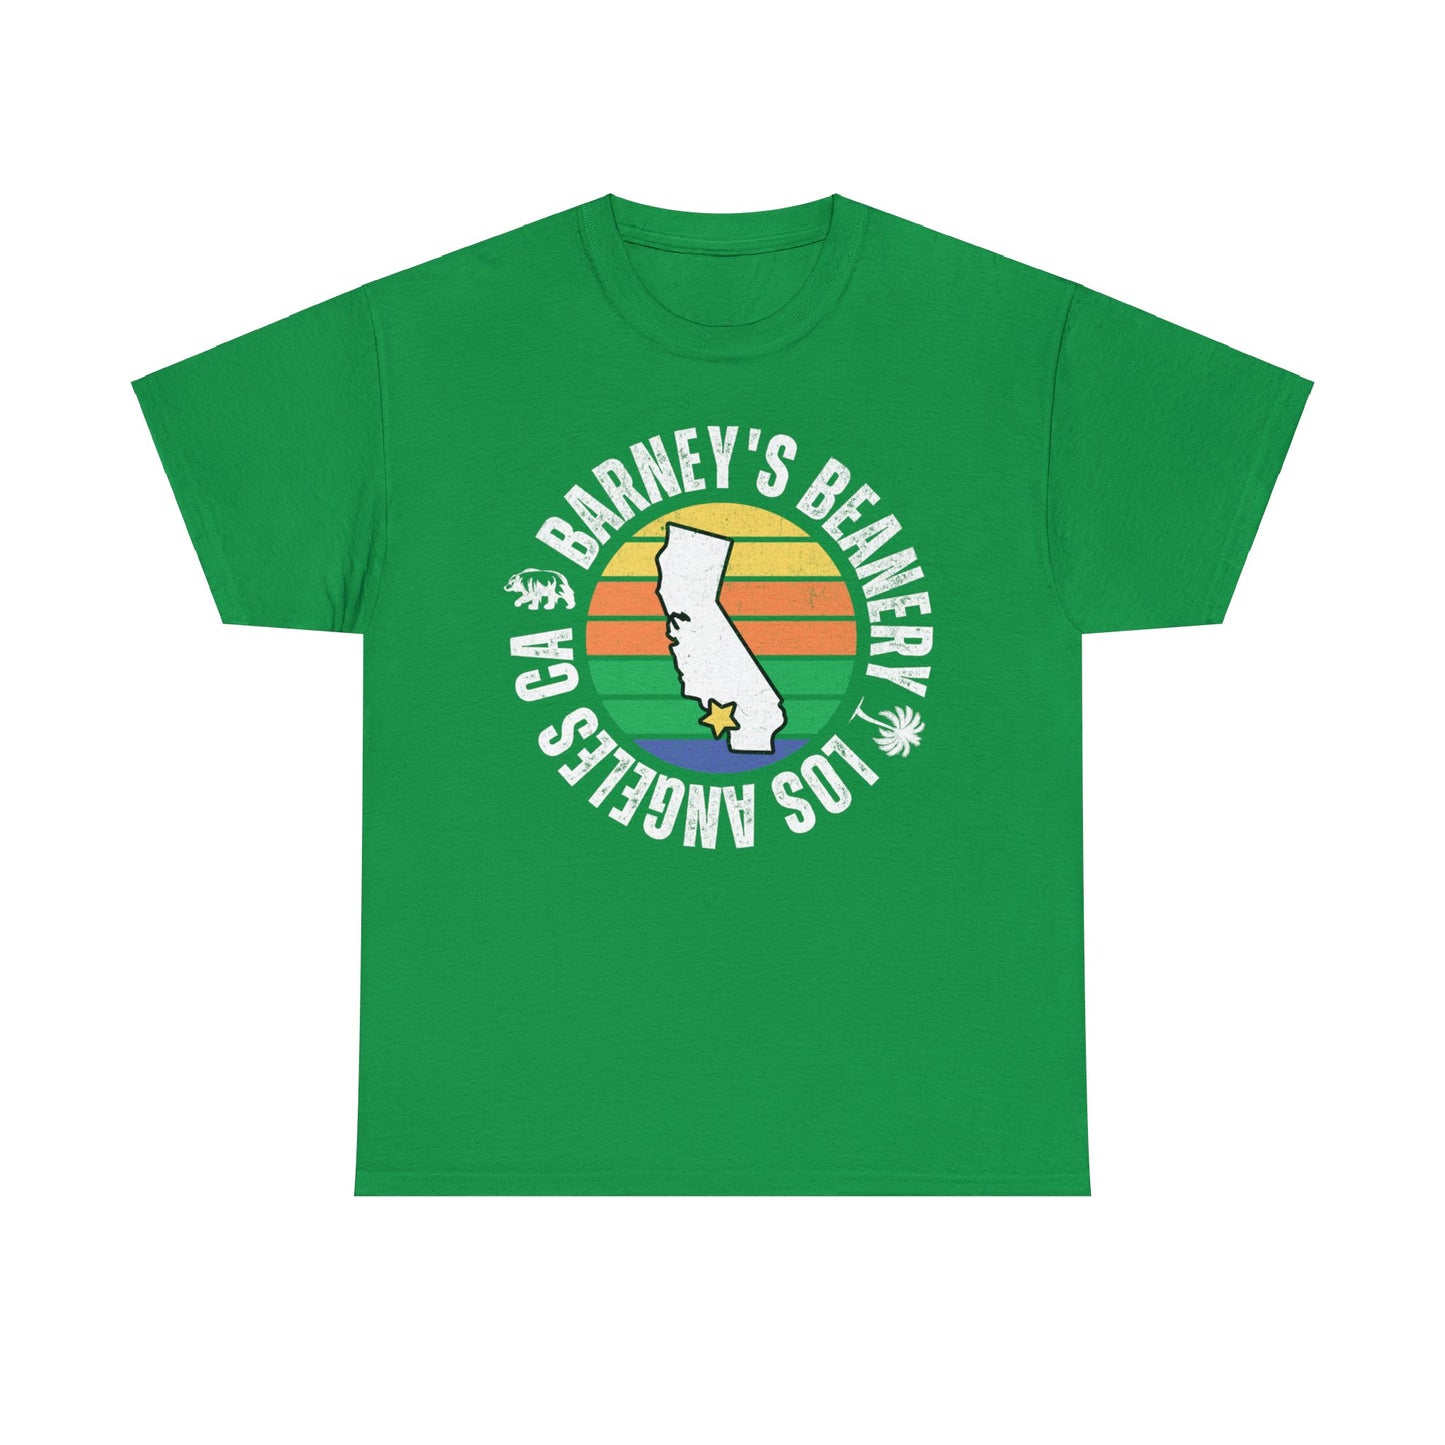 Retro Sunset | BARNEY'S BEANERY - Women's Retro Graphic Tee | Irish Green Gildan 5000 T-Shirt, Front View Flat Lay